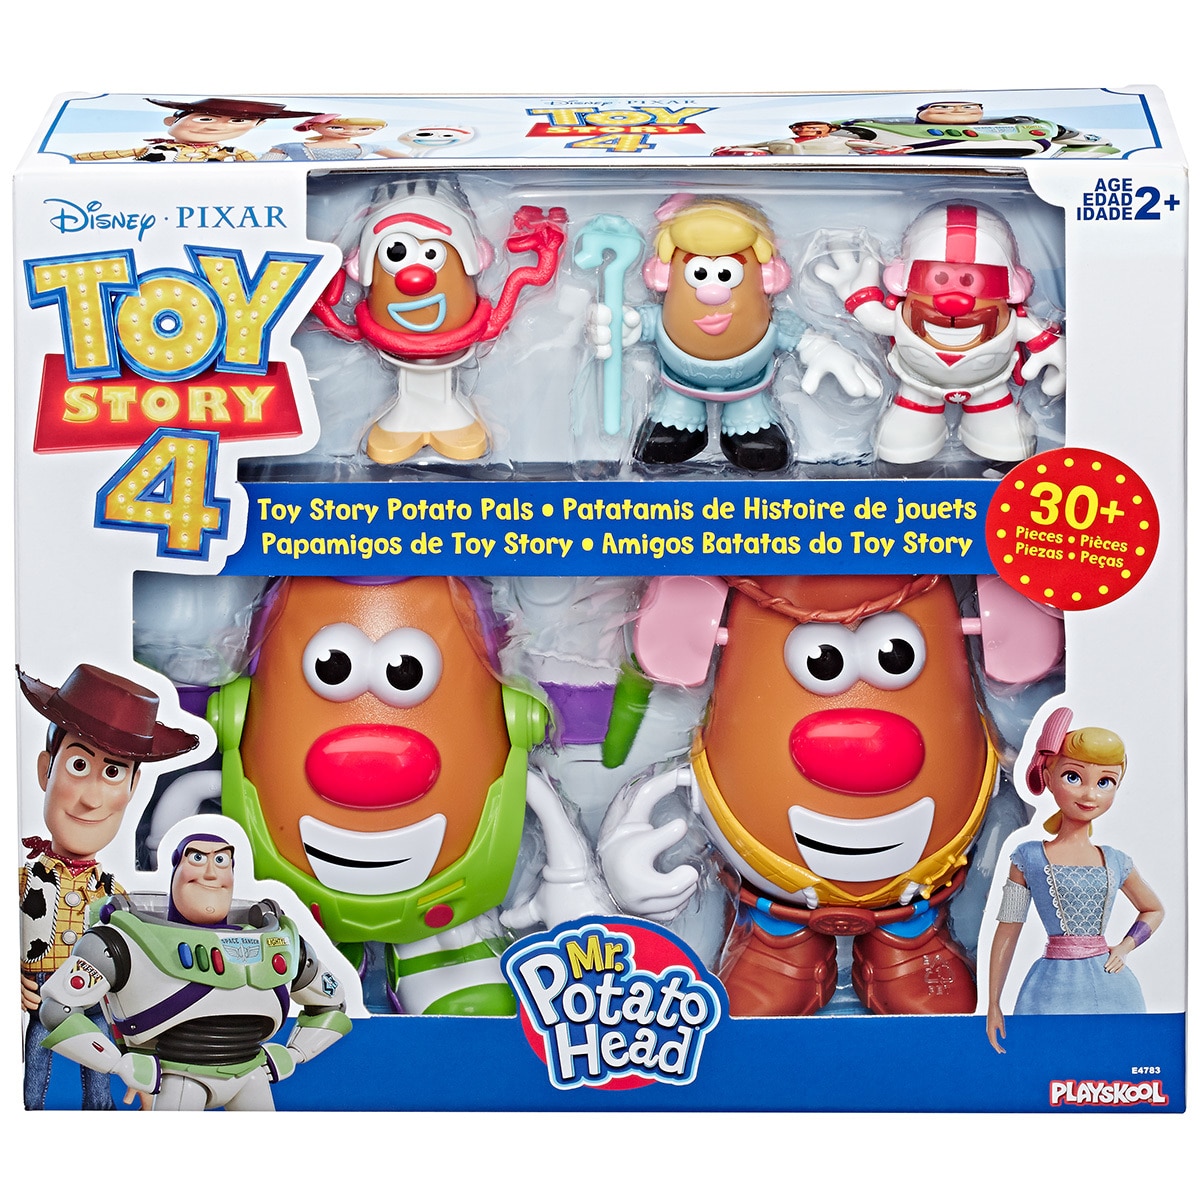 Hasbro Toy Story 4 Mr Potato Head 